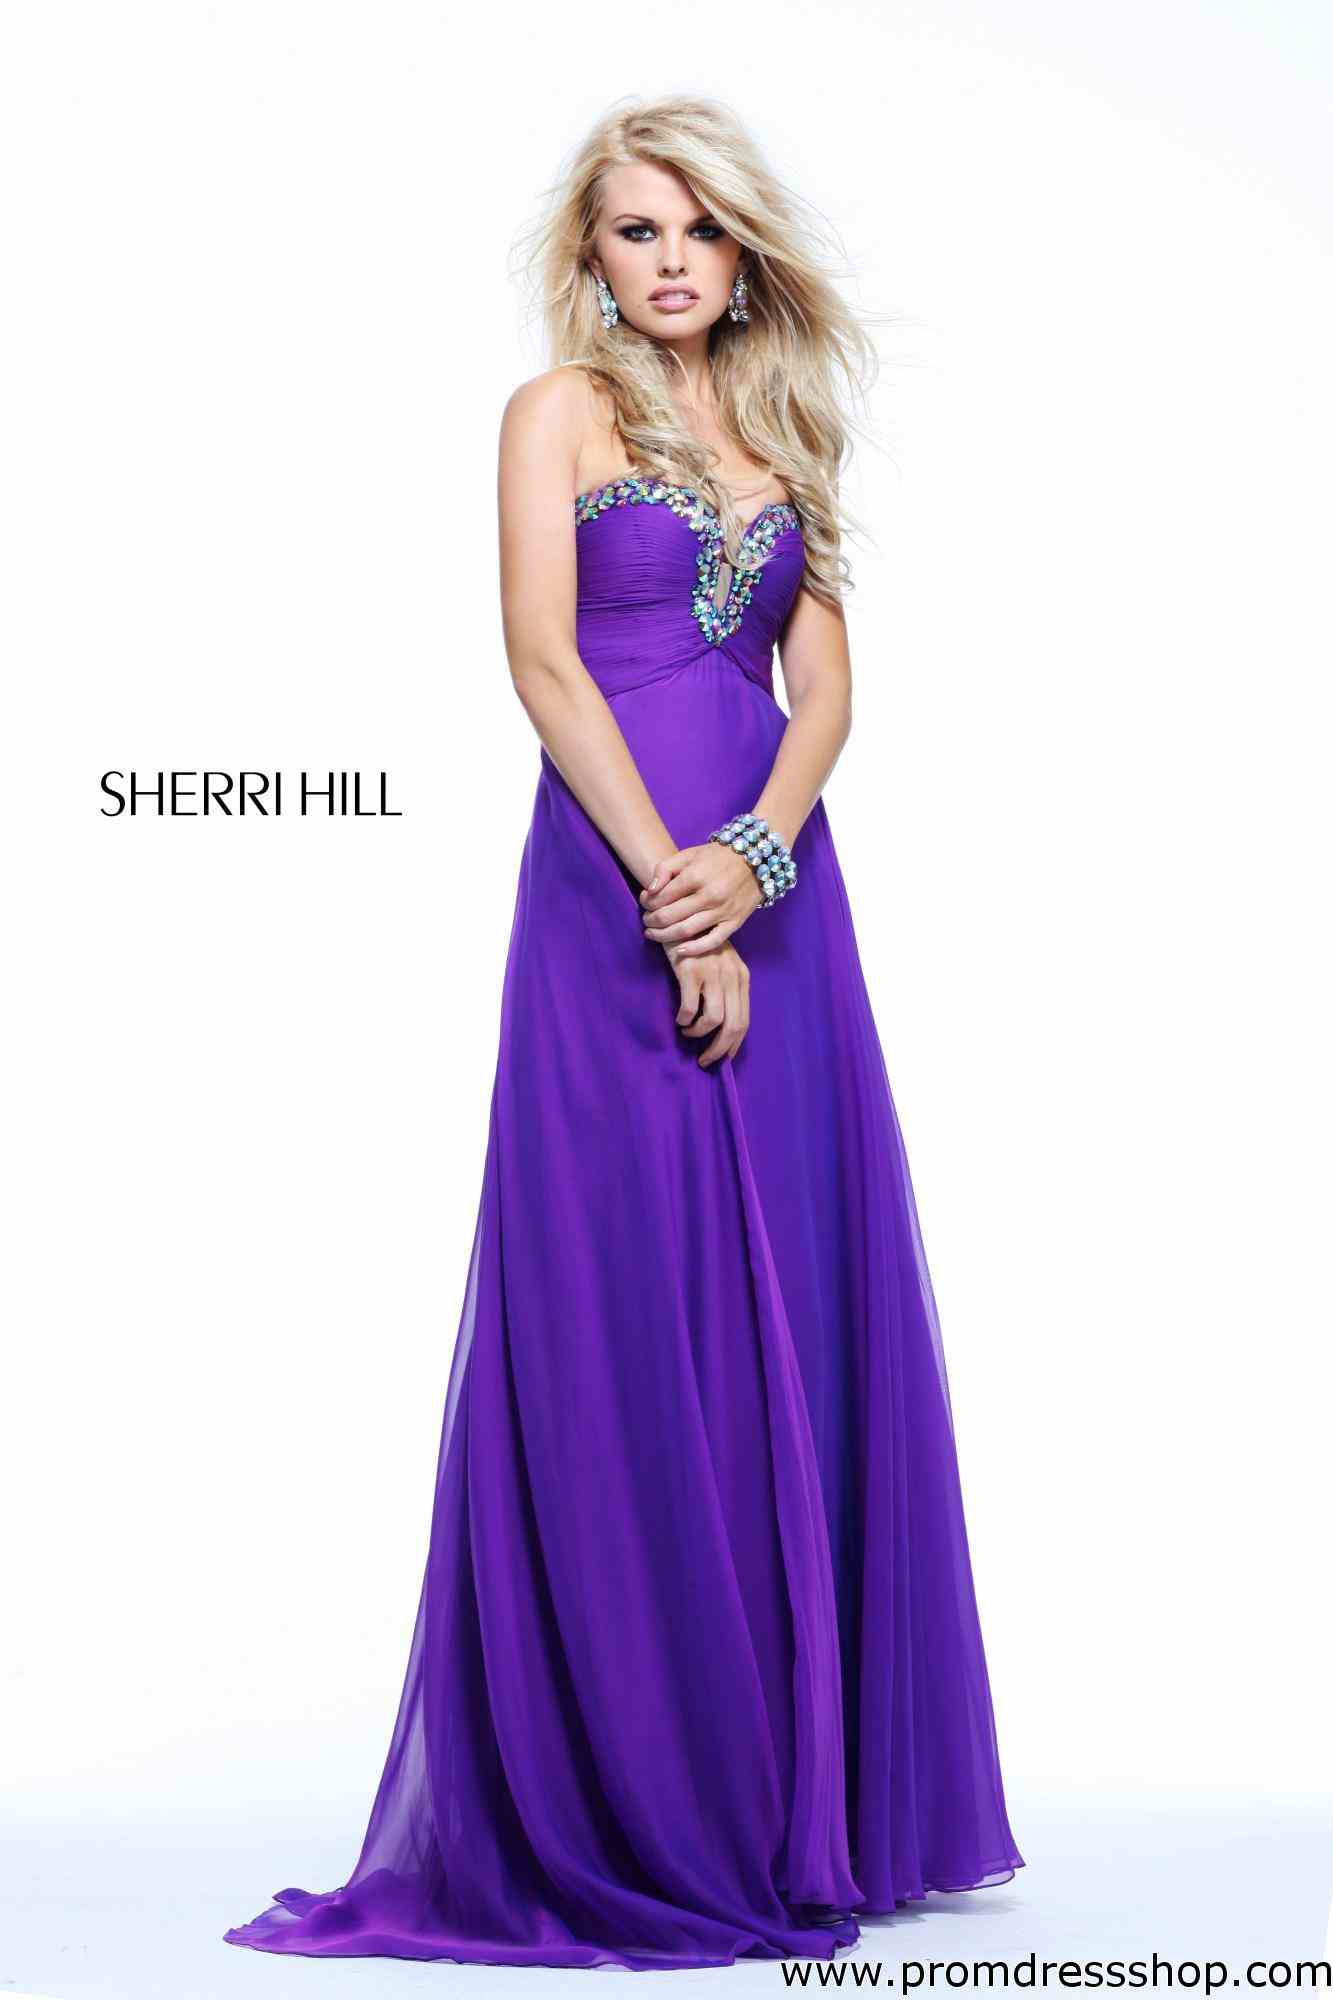 Prom-Dress-Sherri-Hill-Sherri_Hill_21097_purple_21097_sp13_6_copy.jpg